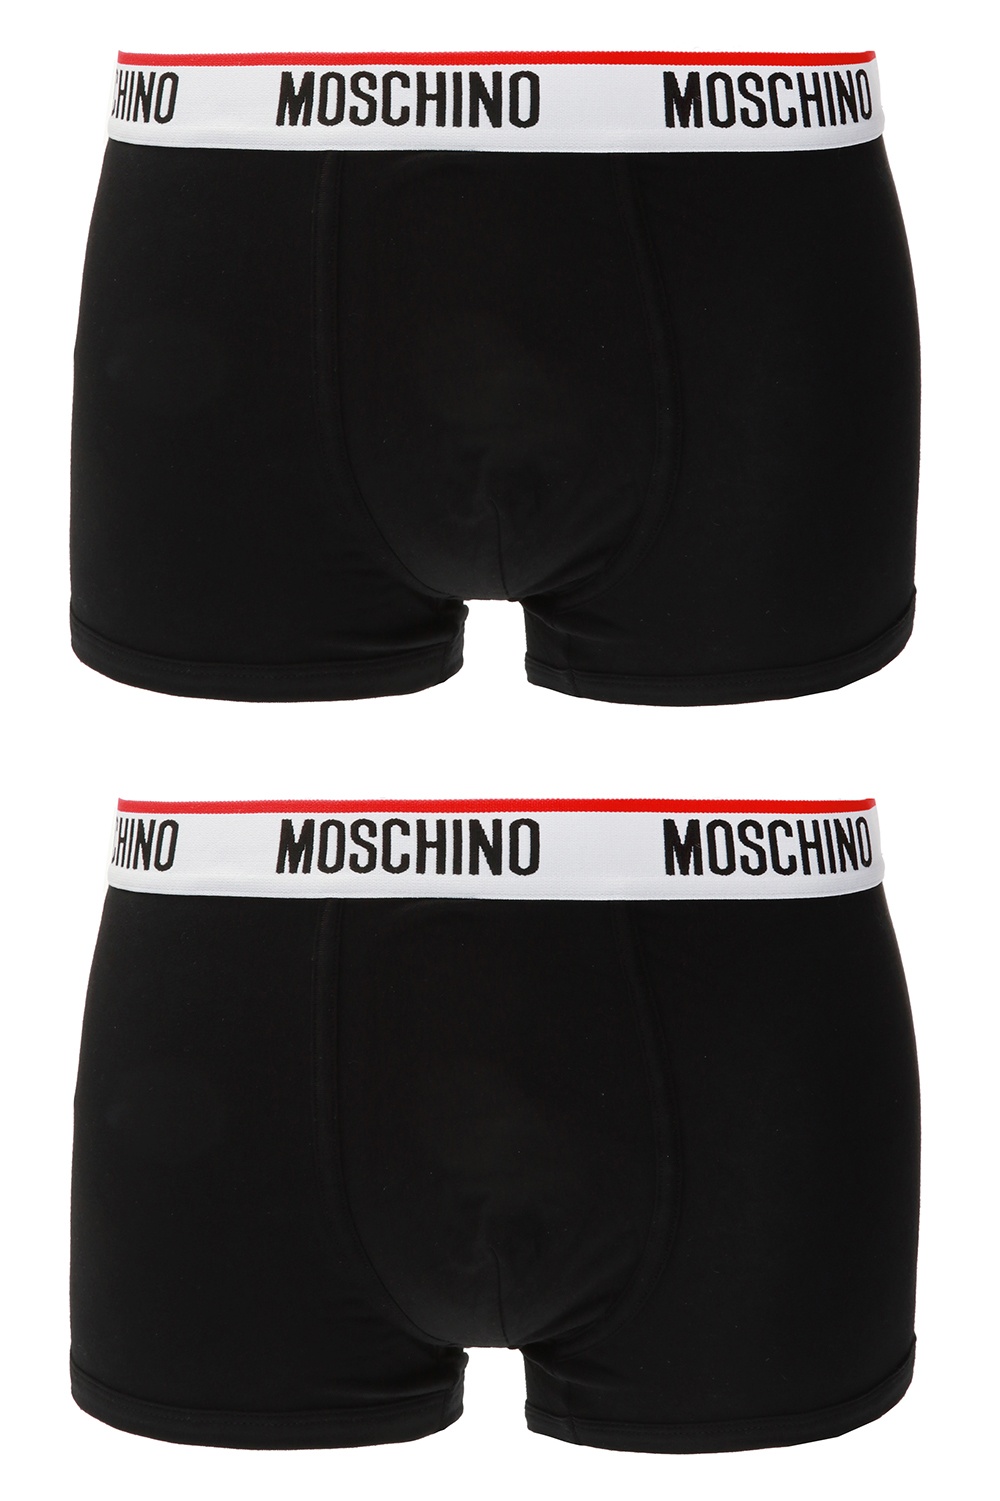 moschino trunks underwear